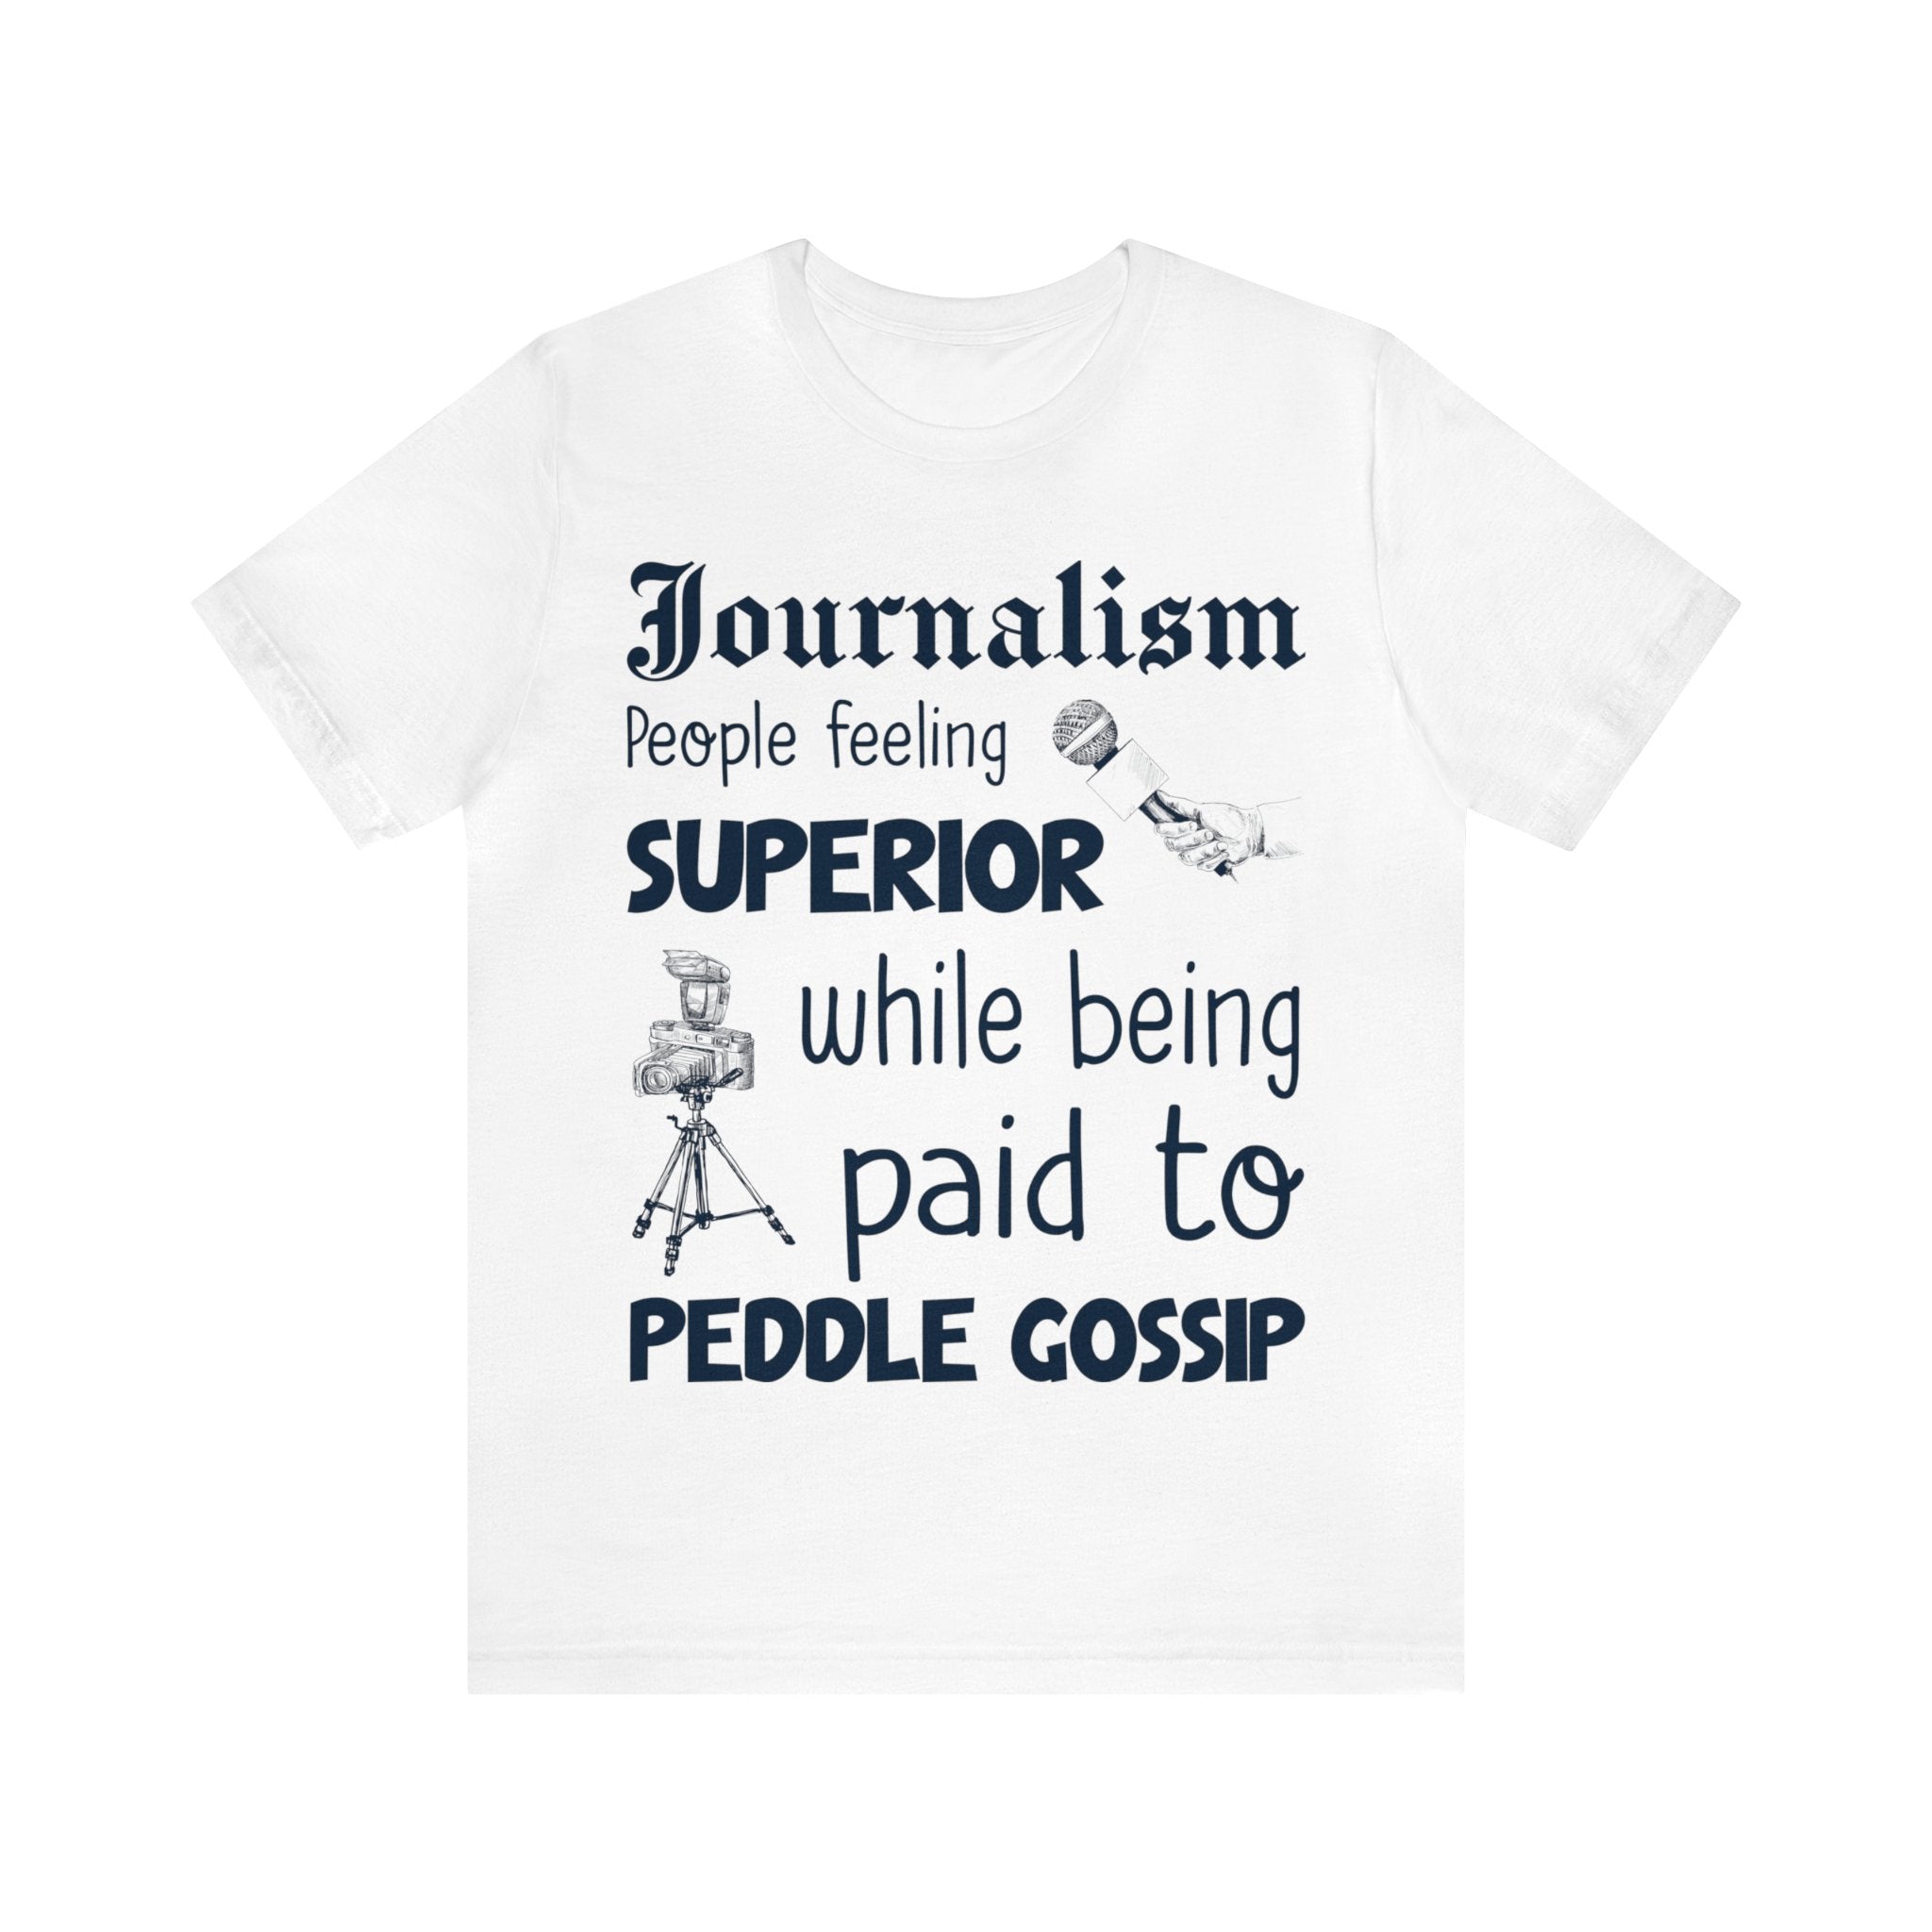 Journalism - Superior Gossip Peddlers